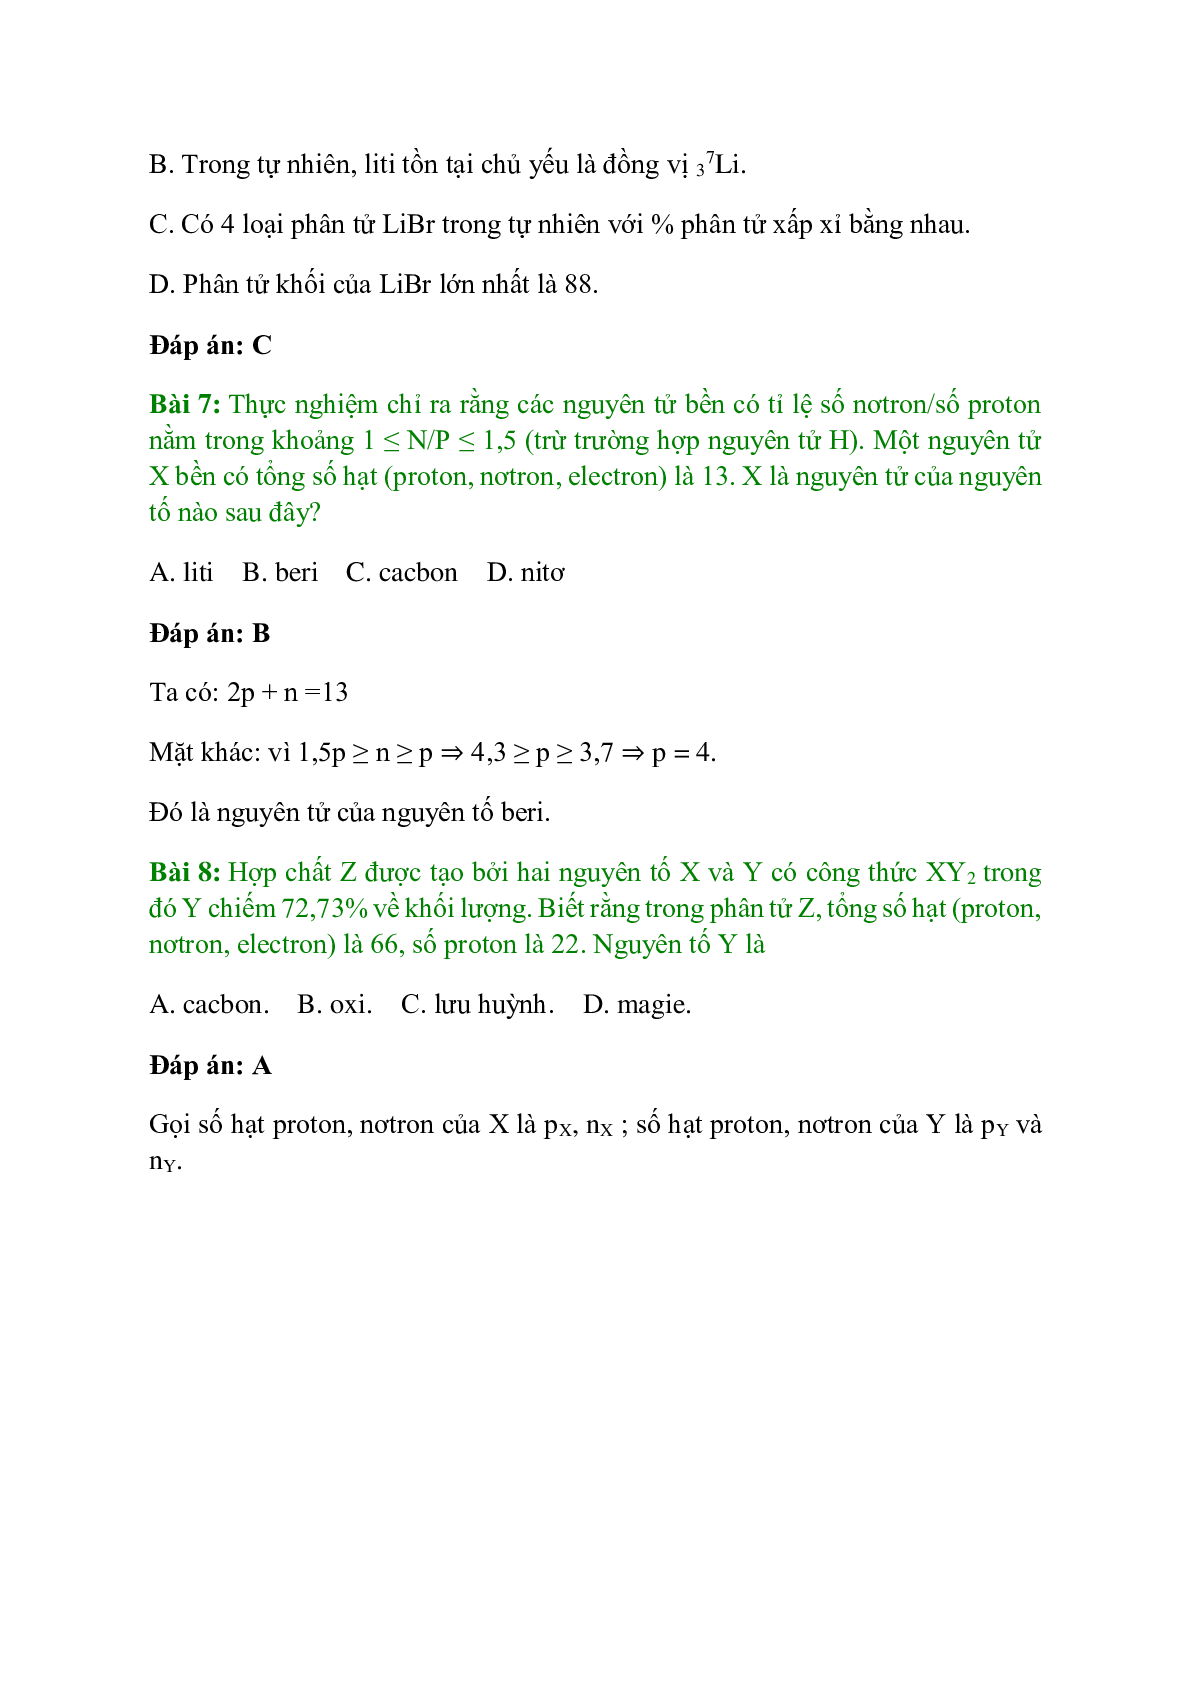 Trắc nghiệm Luyện tập: Thành phần nguyên tử có đáp án - Hóa học 10 (trang 4)